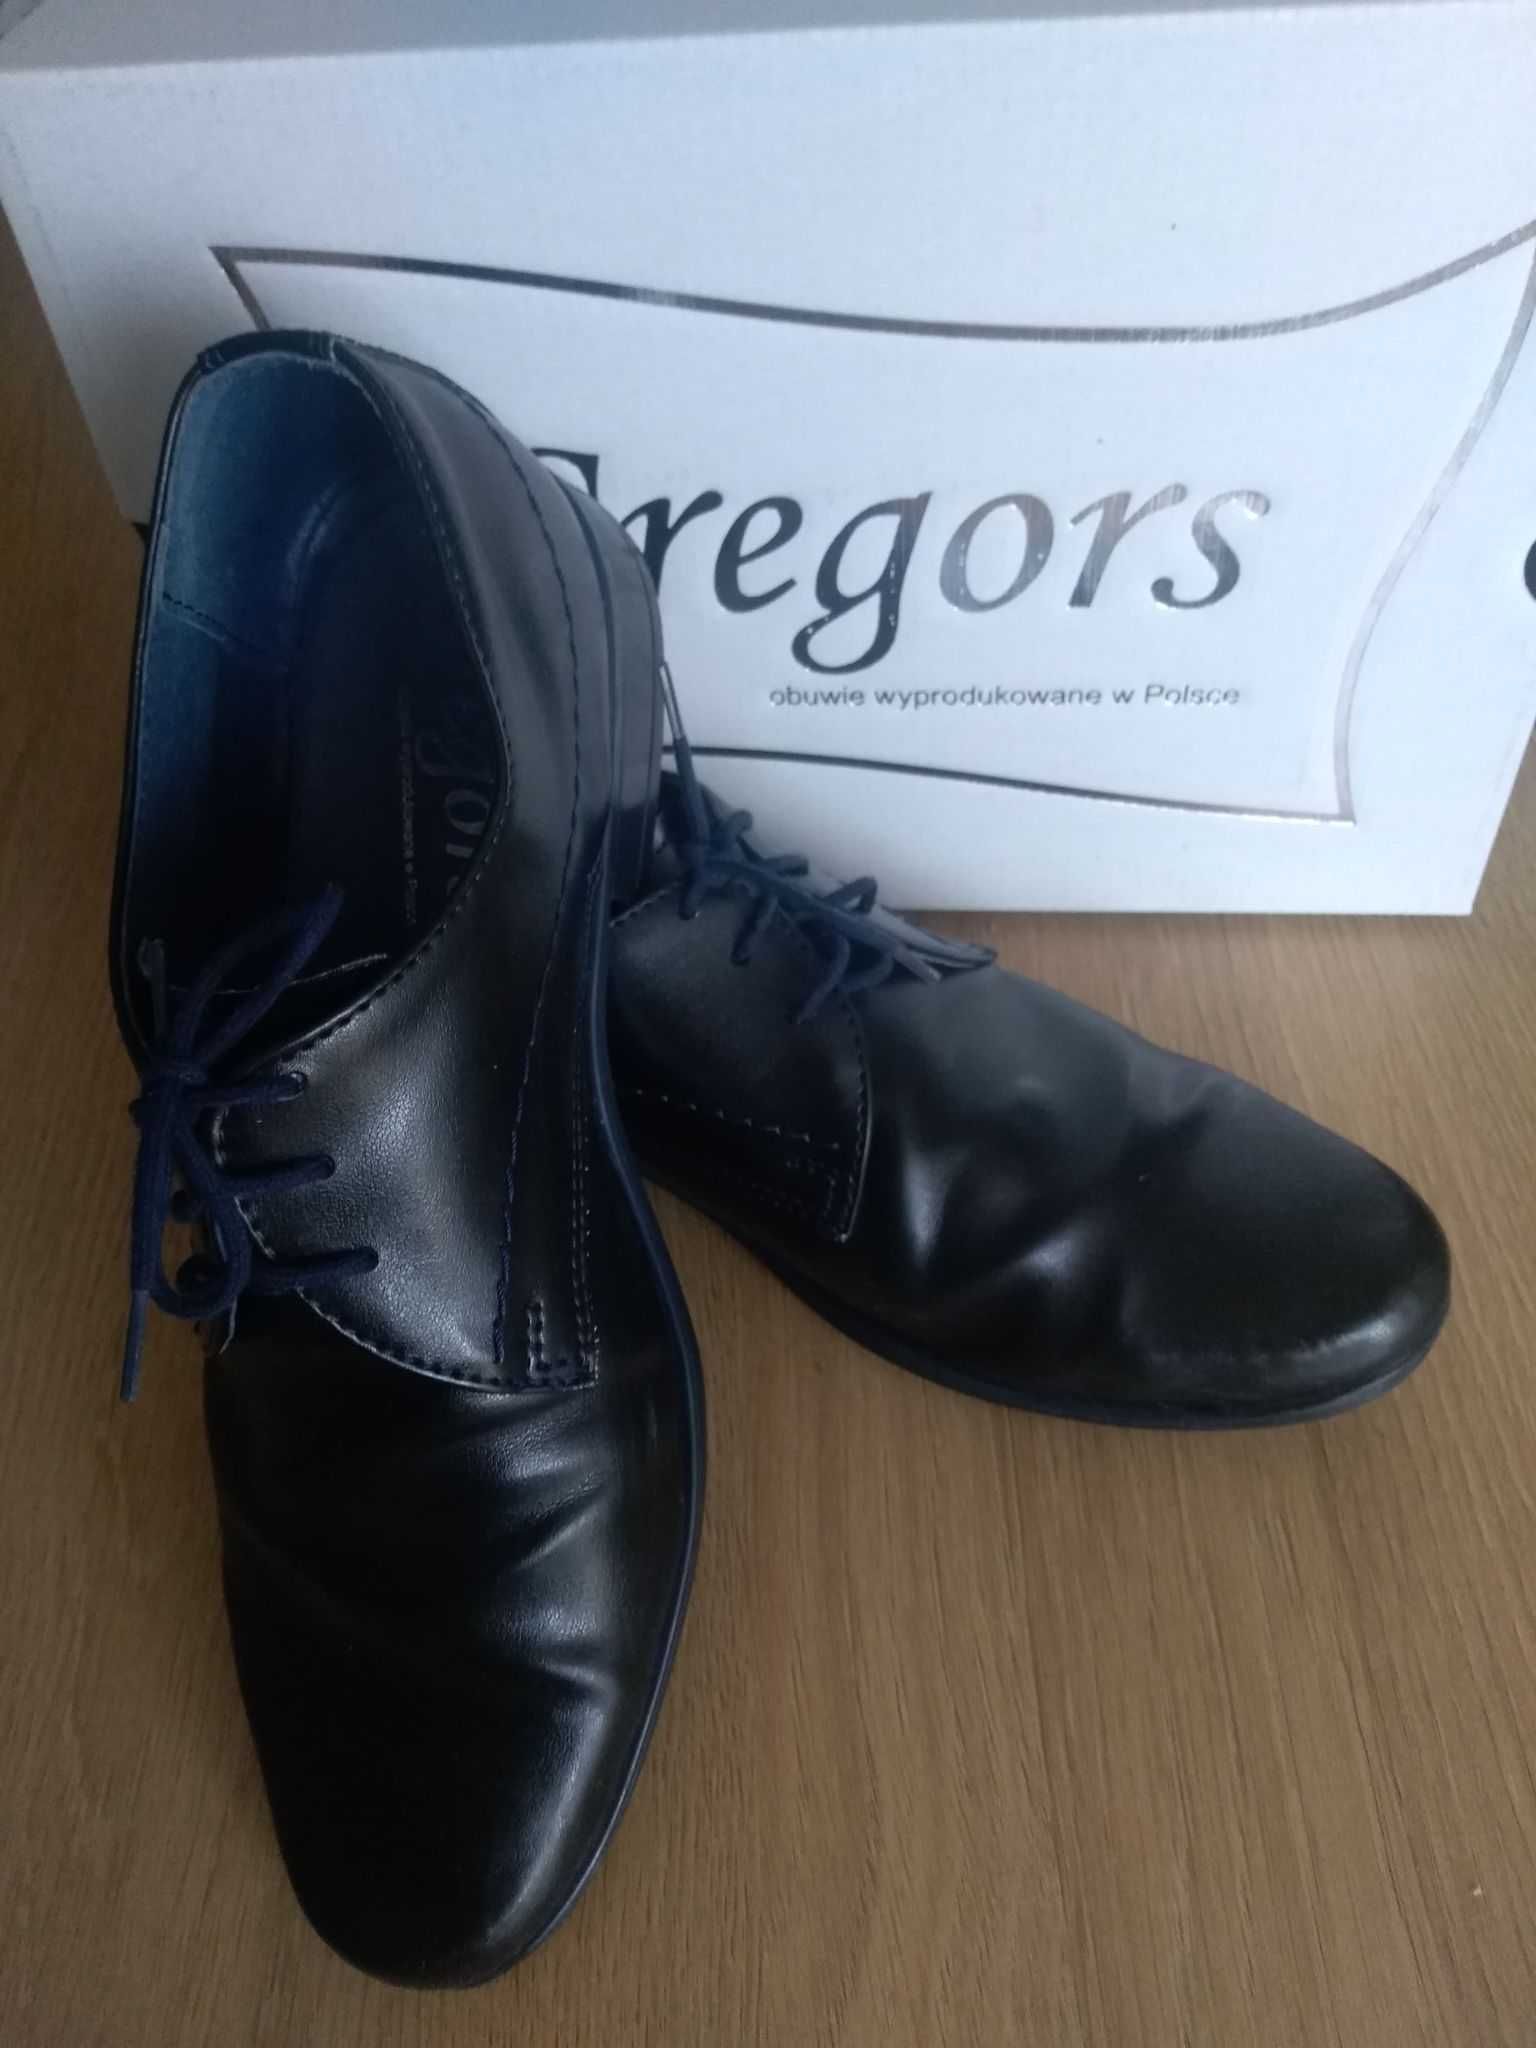 Buty chłopięce Gregors 562 rozmiar 37